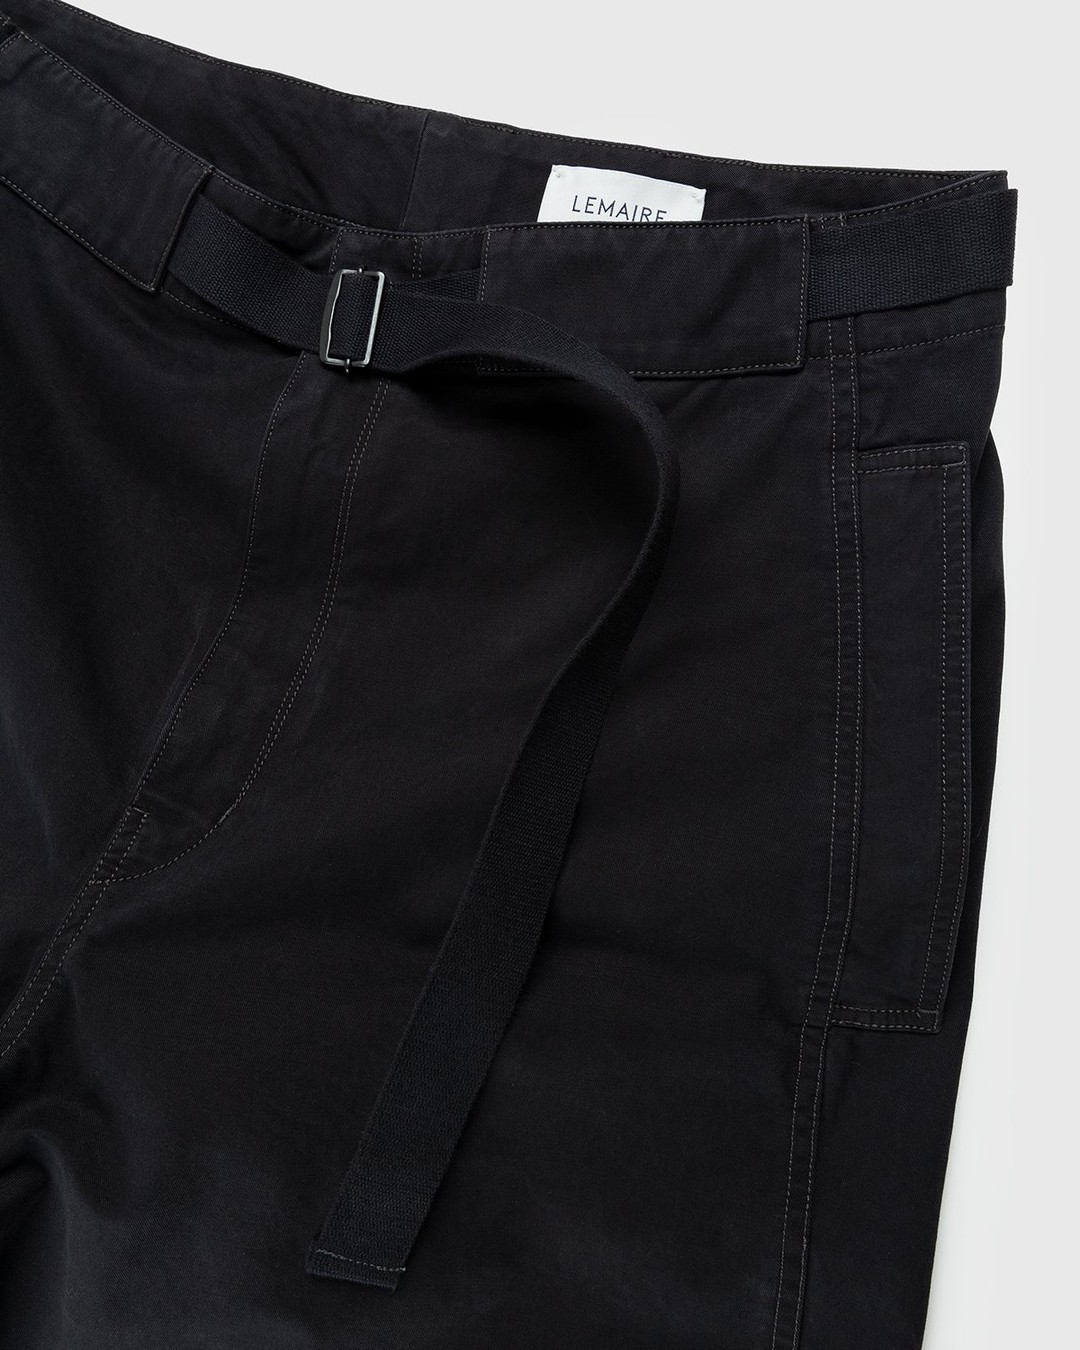 Lemaire – Utility Pants Black - Pants - Black - Image 4